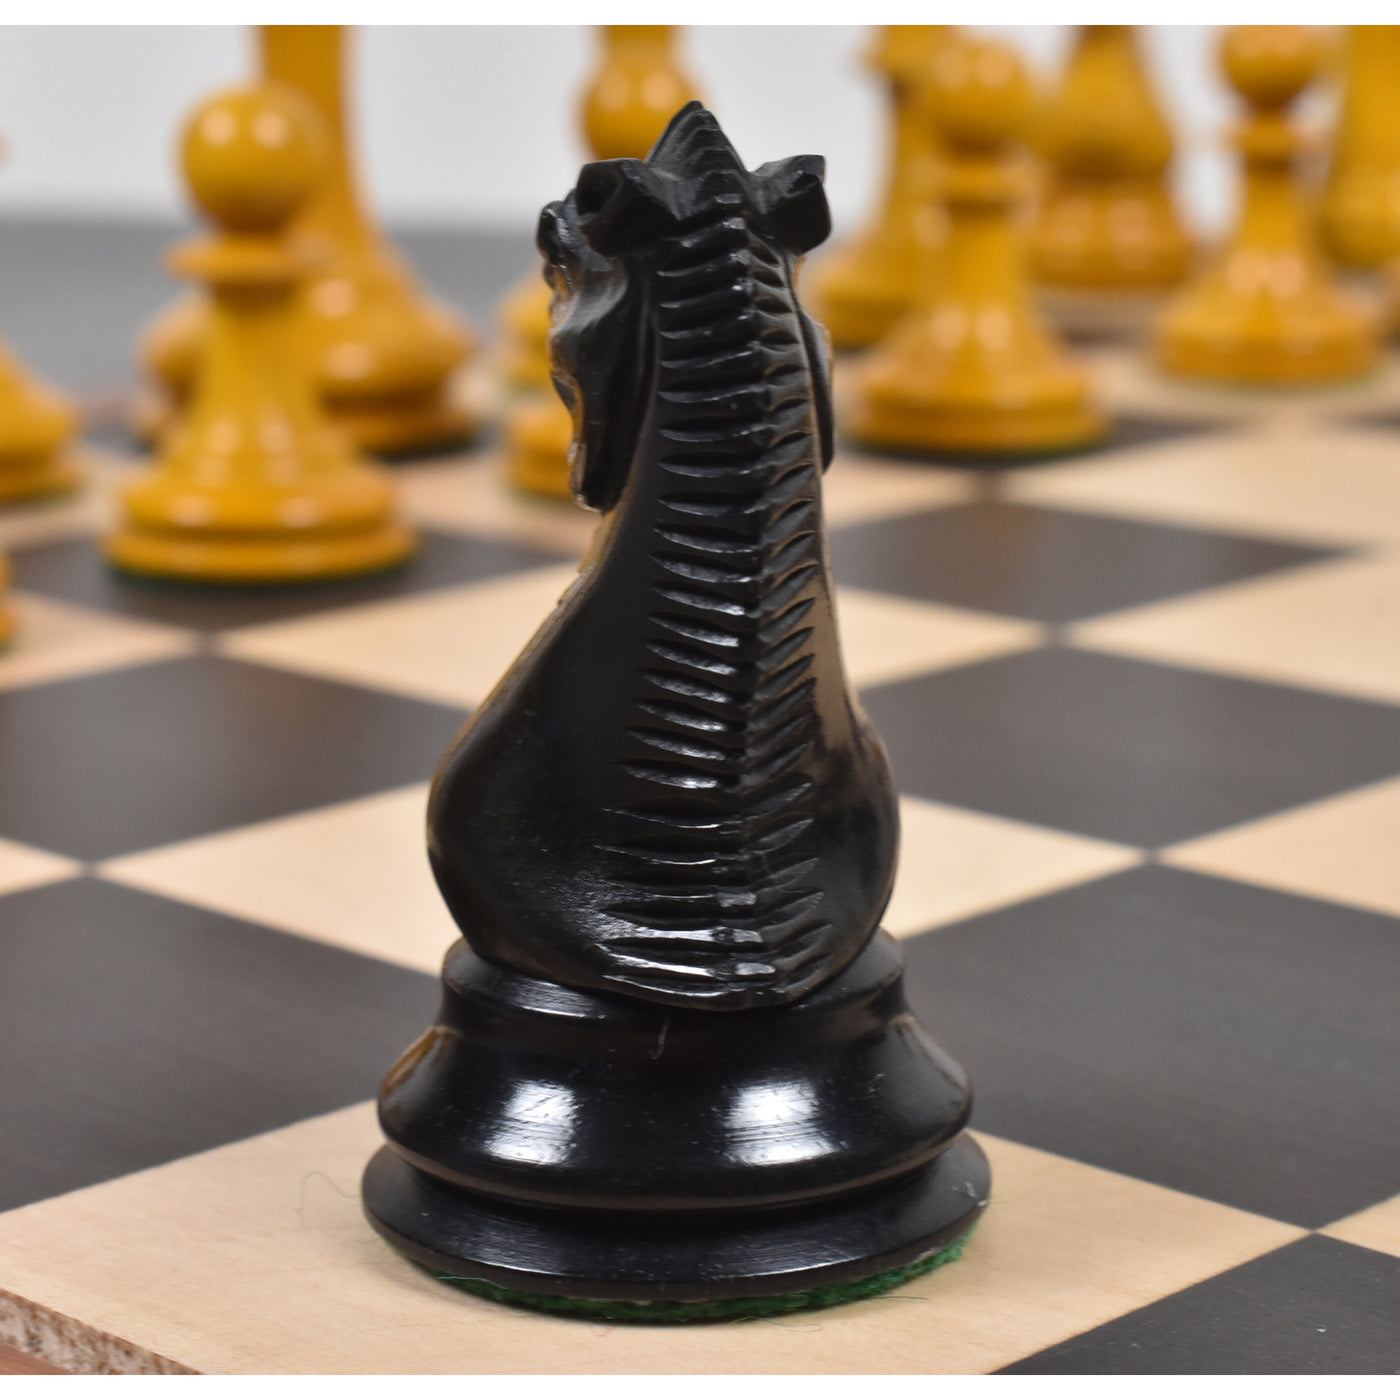 Harrwitz Staunton Chess Pieces | Staunton Chess Set | Wood Chess Sets